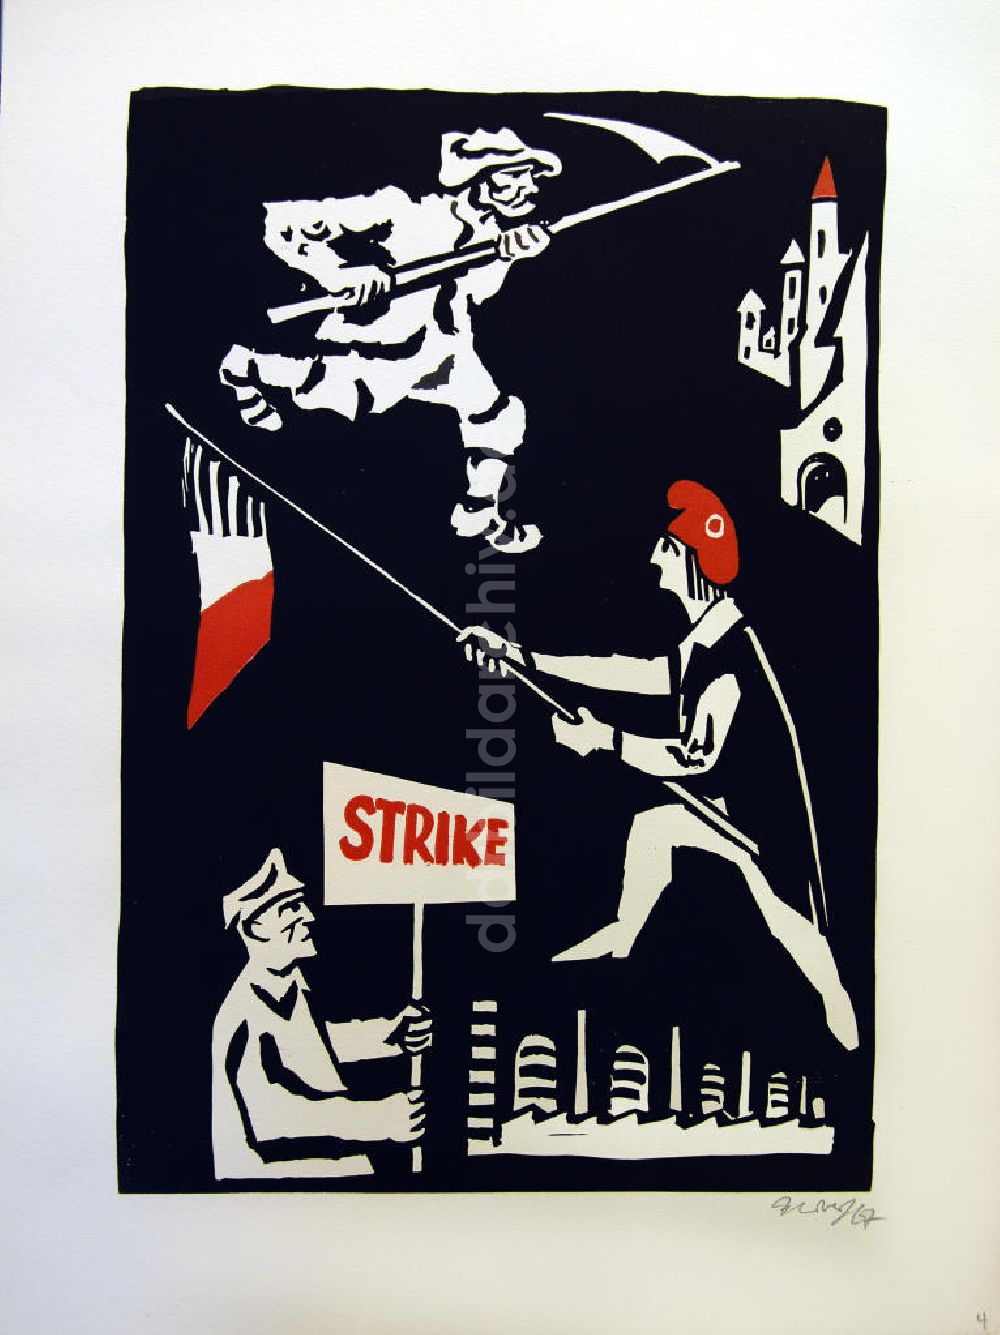 DDR-Fotoarchiv: Berlin - Grafik von Herbert Sandberg Motiv 4 aus dem Zyklus Bilder zum Kommunistischen Manifest aus dem Jahr 1967